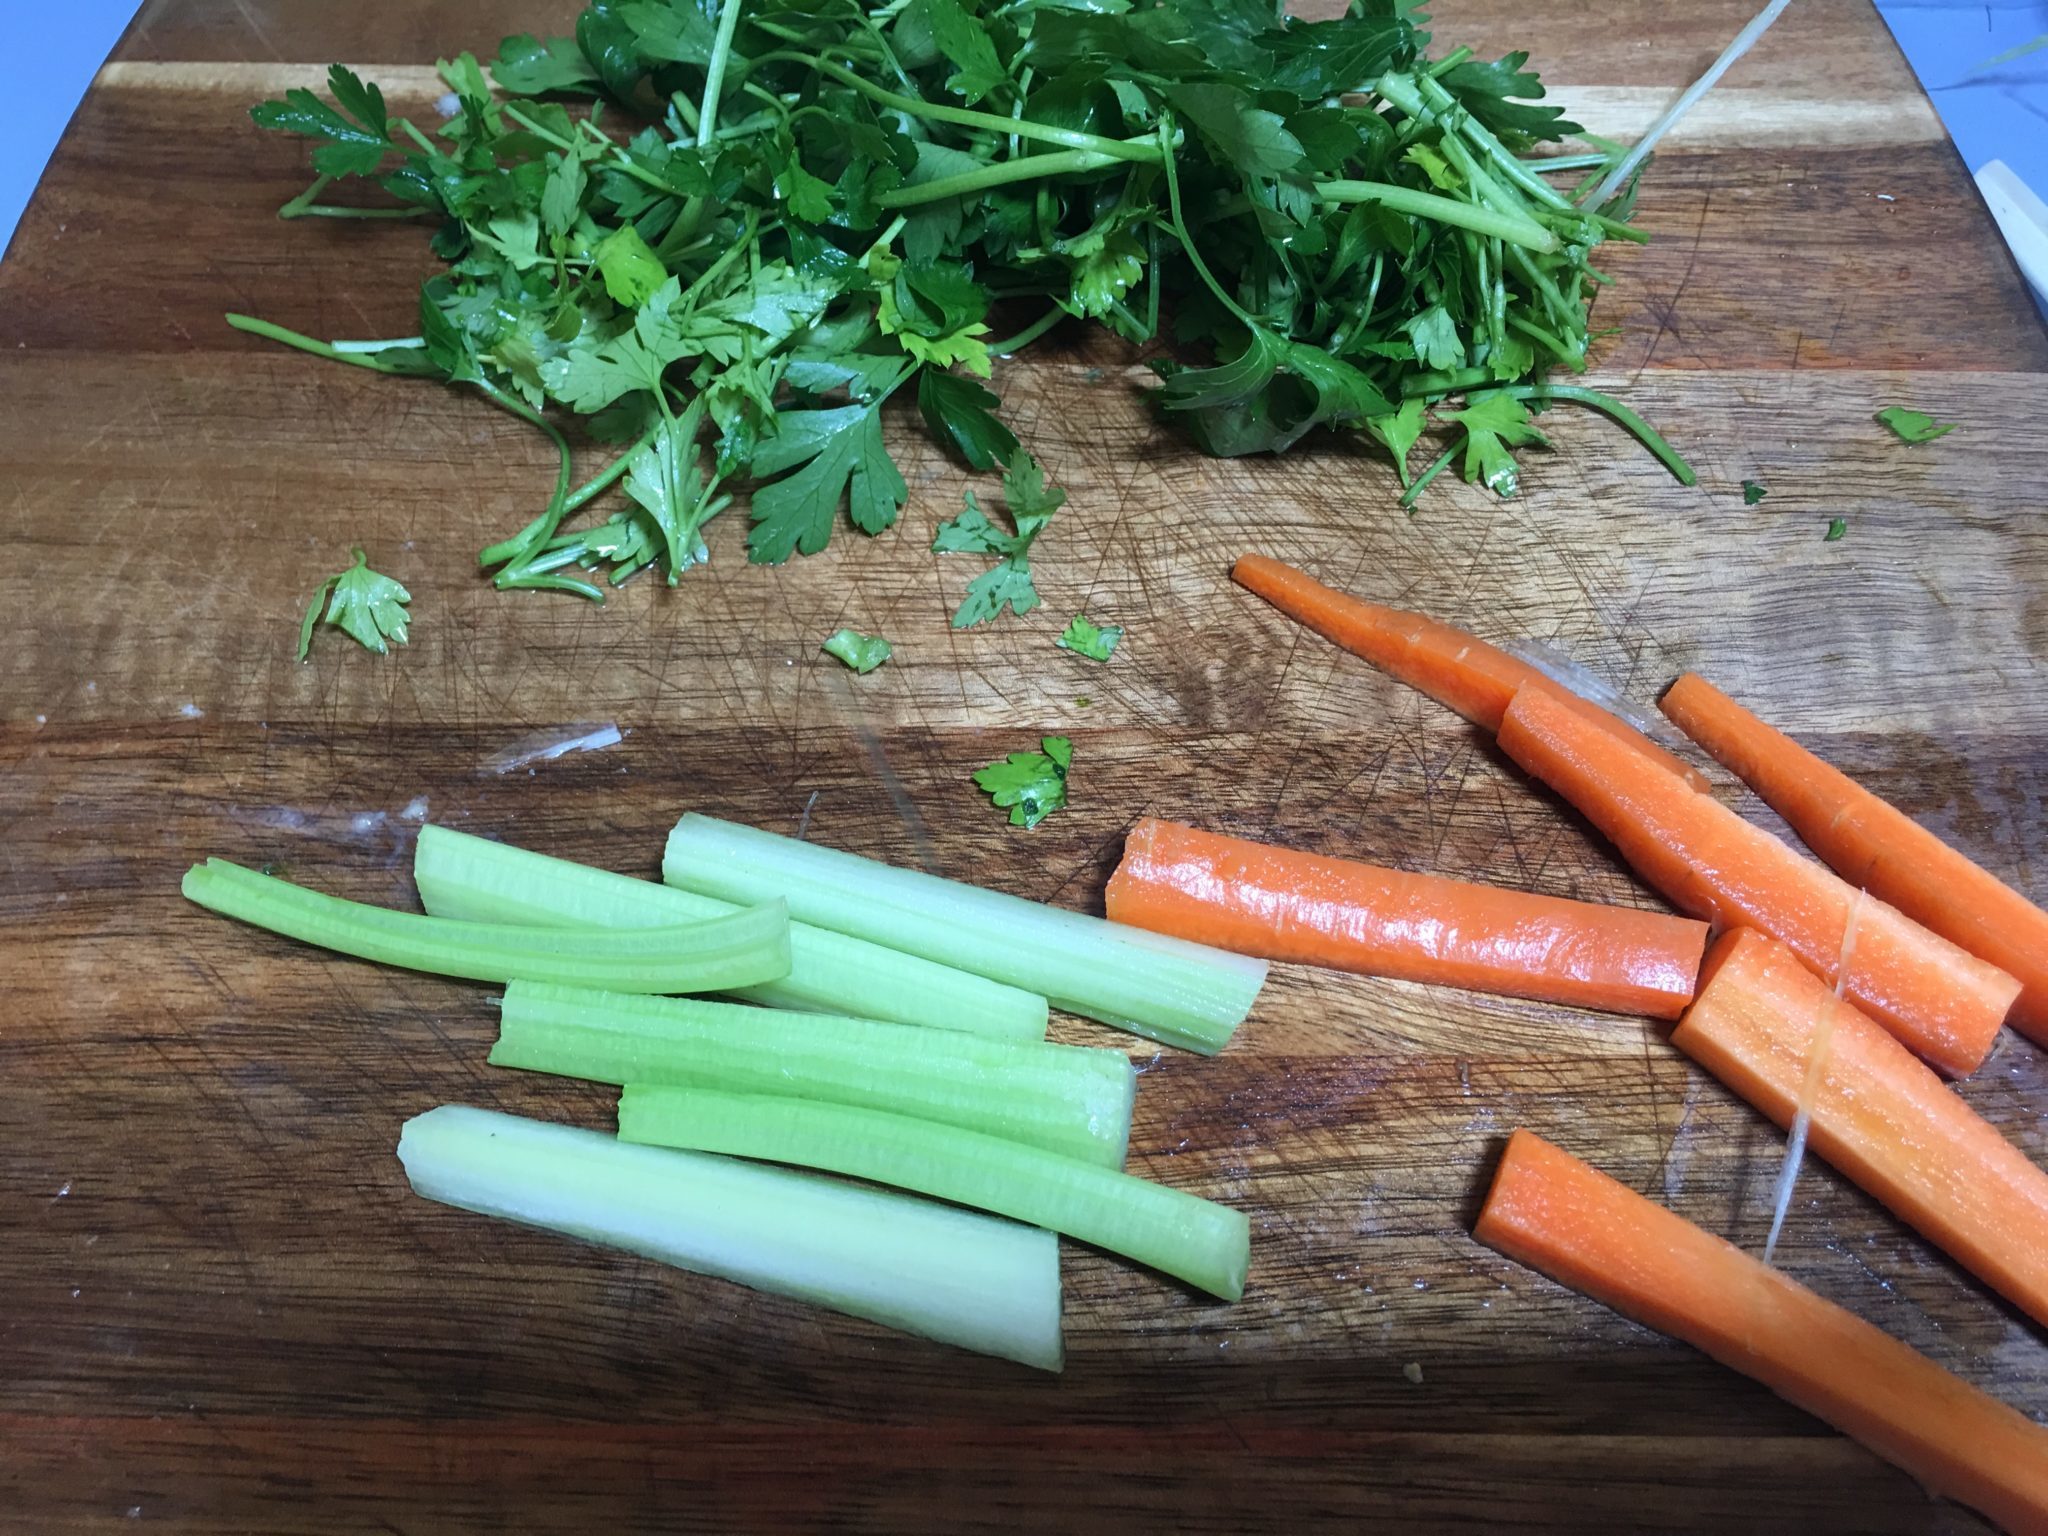 Involtini extra light - carote, sedano e prezzemolo sminuzzati